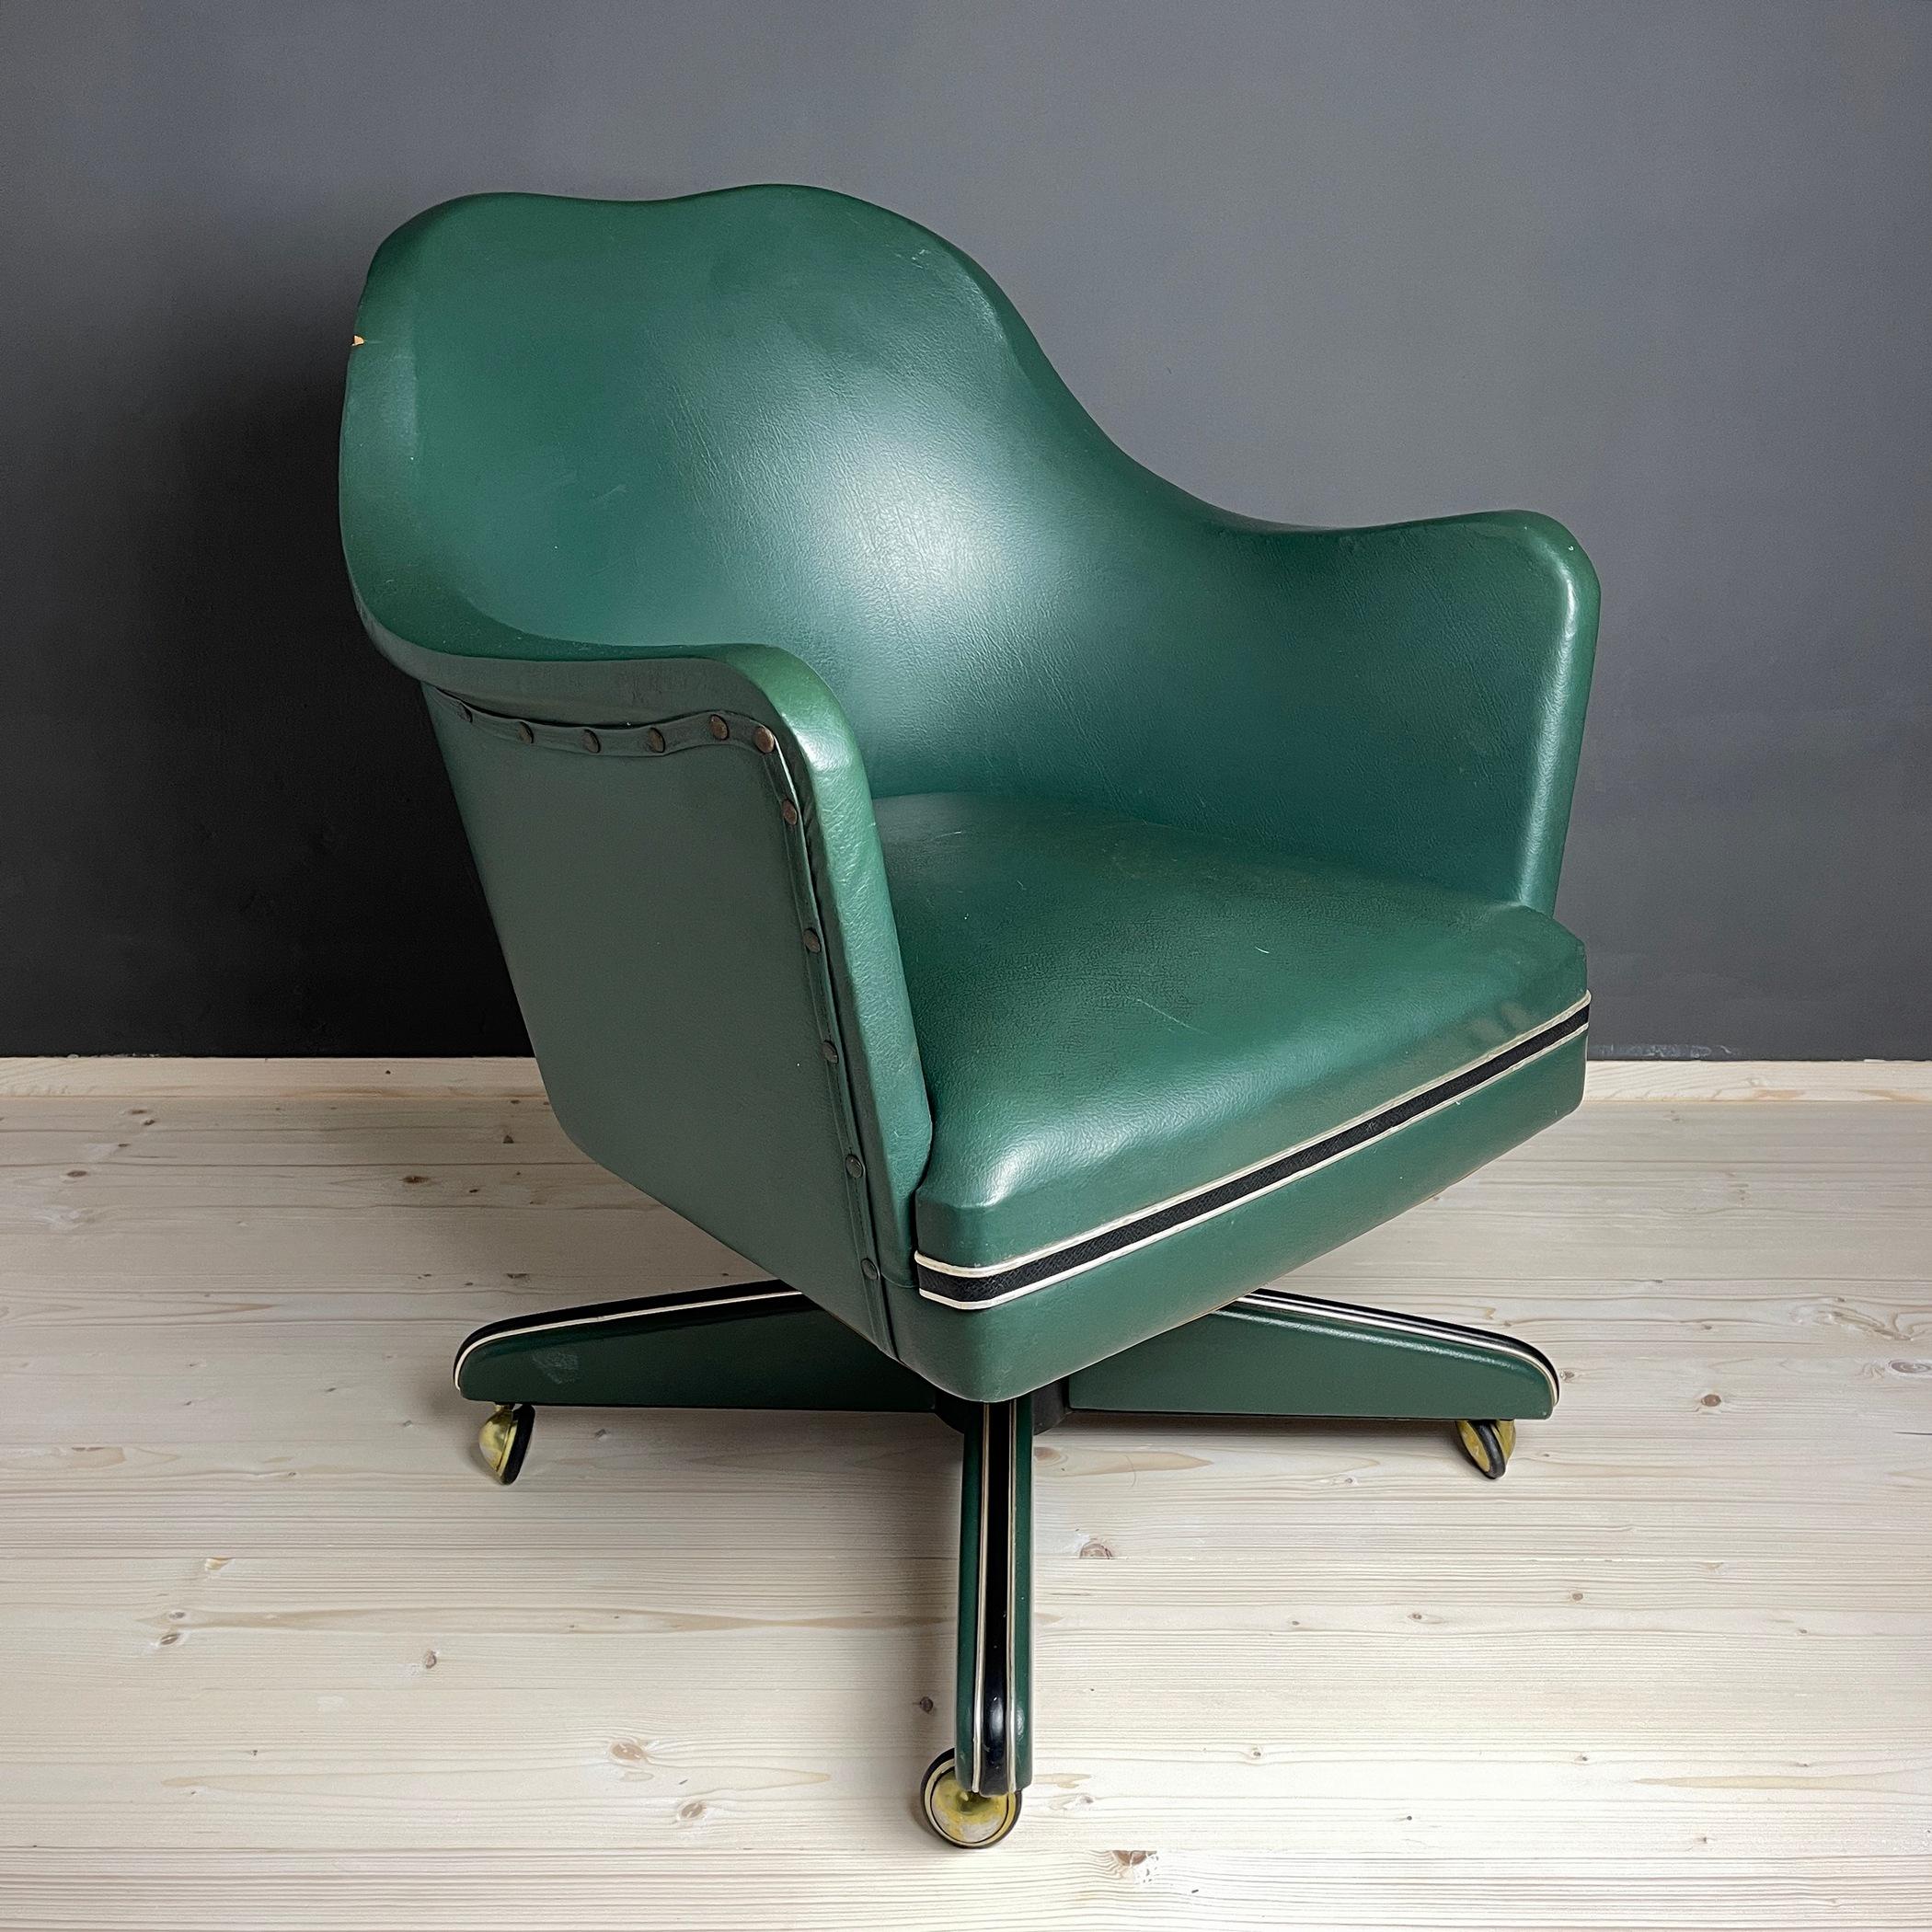 Chaise de bureau verte pivotante du milieu du siècle par Umberto Mascagni, fabriquée en Italie dans les années 1950. Le vinyle utilisé pour créer ce fauteuil d'Umberto Mascagni était un matériau très populaire dans les années 1950. La chaise a un